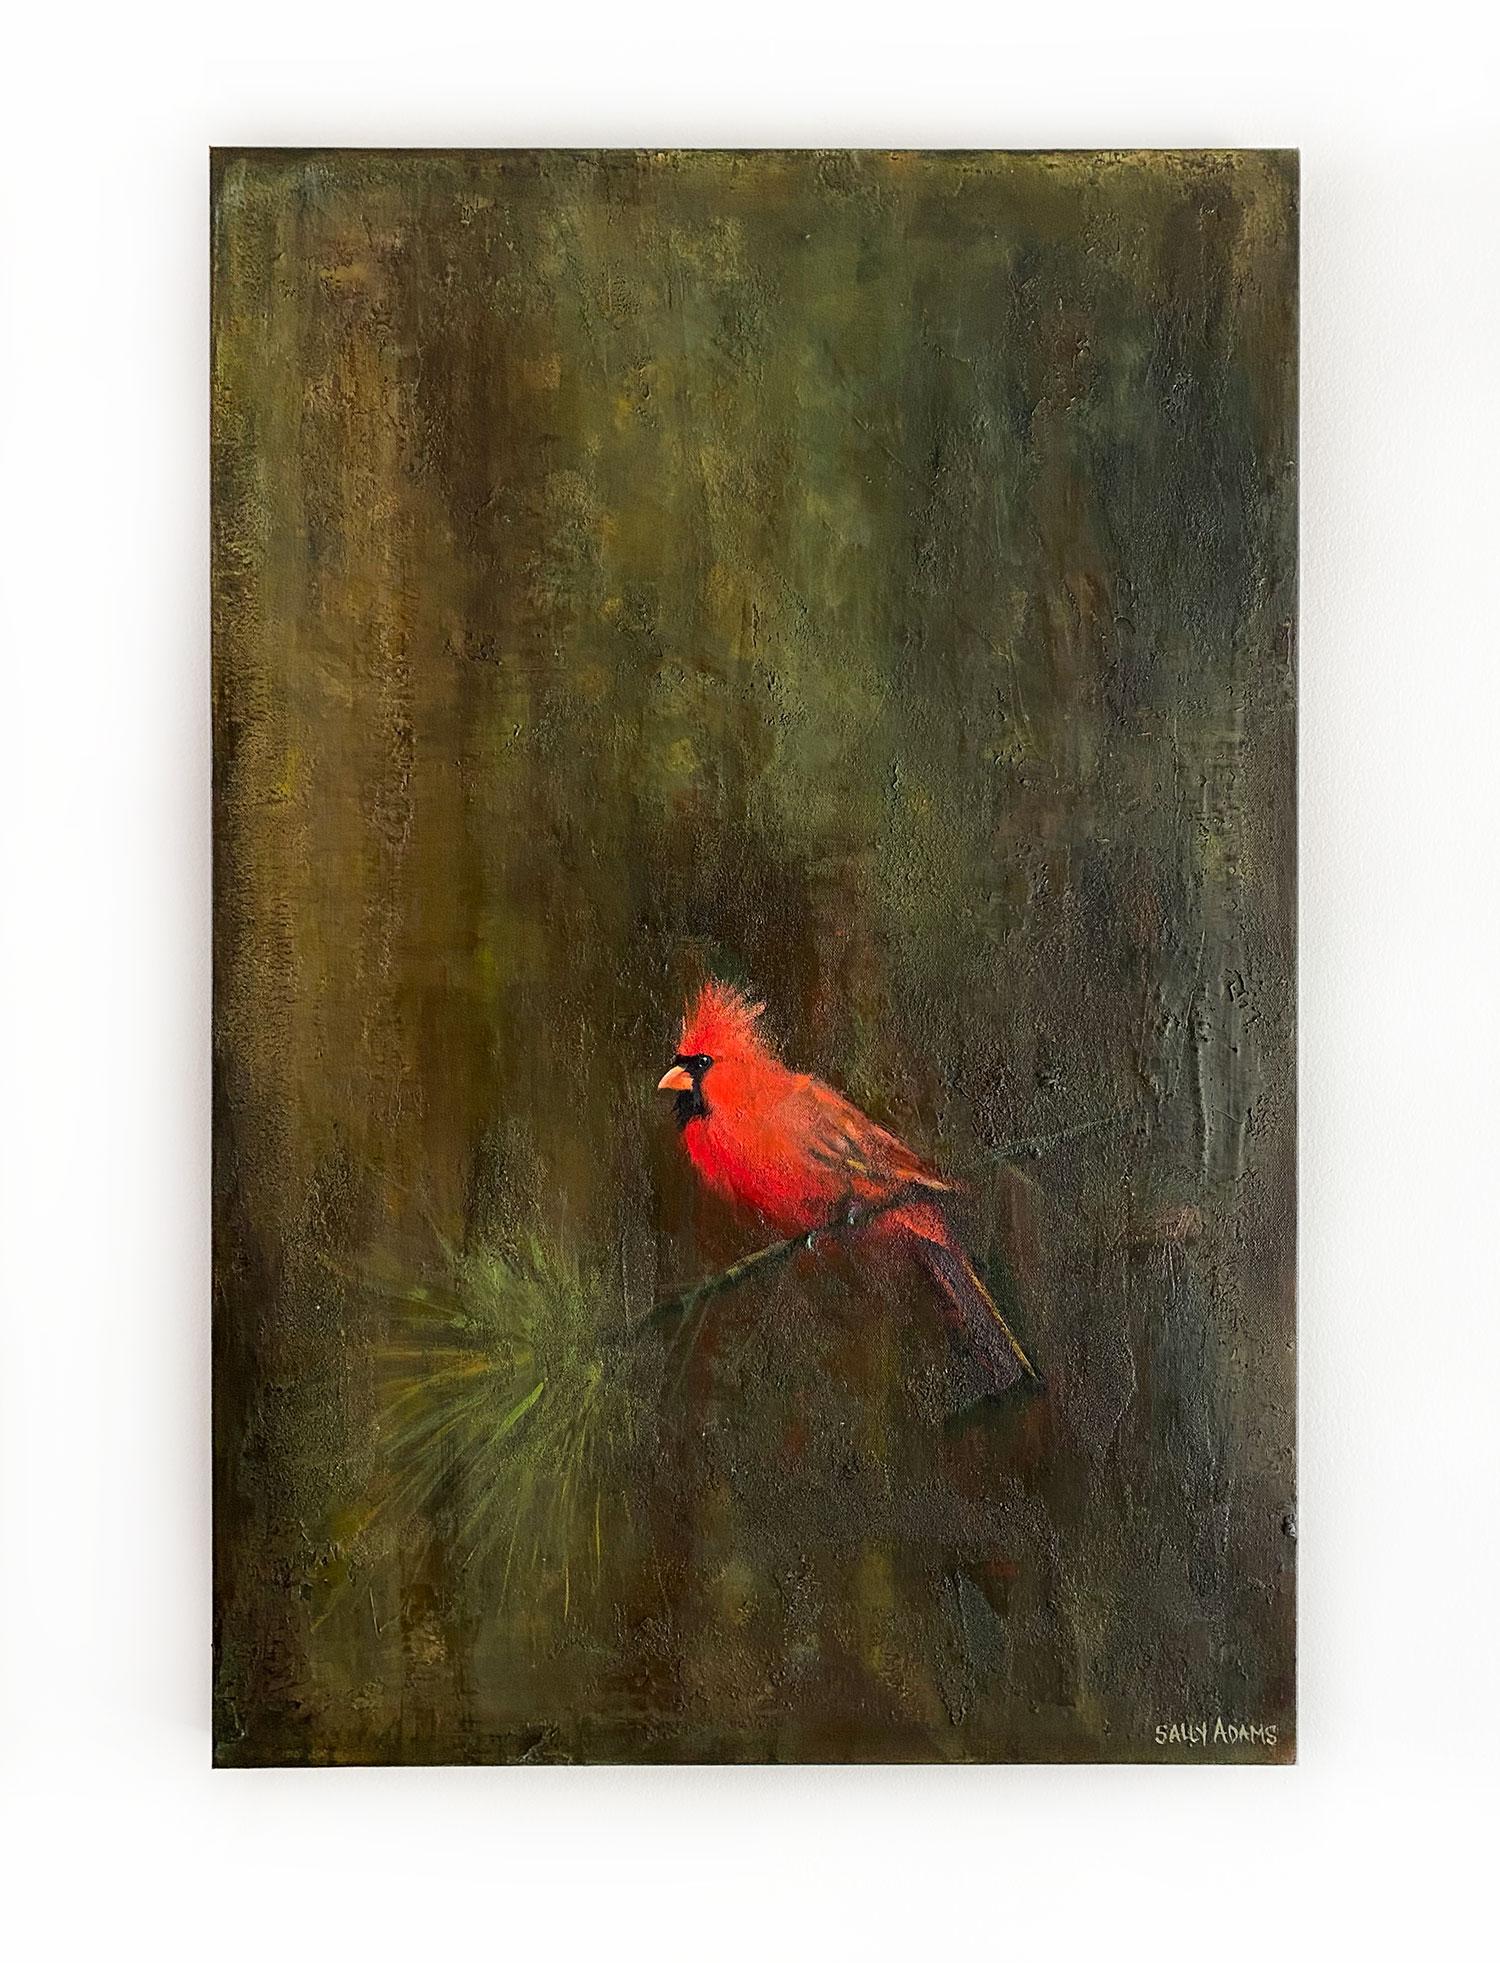 <p>Commentaires de l'artiste<br>L'artiste Sally Adams représente un cardinal rouge perché sur une fine branche. Elle peint l'oiseau avec des détails raffinés et du réalisme. 